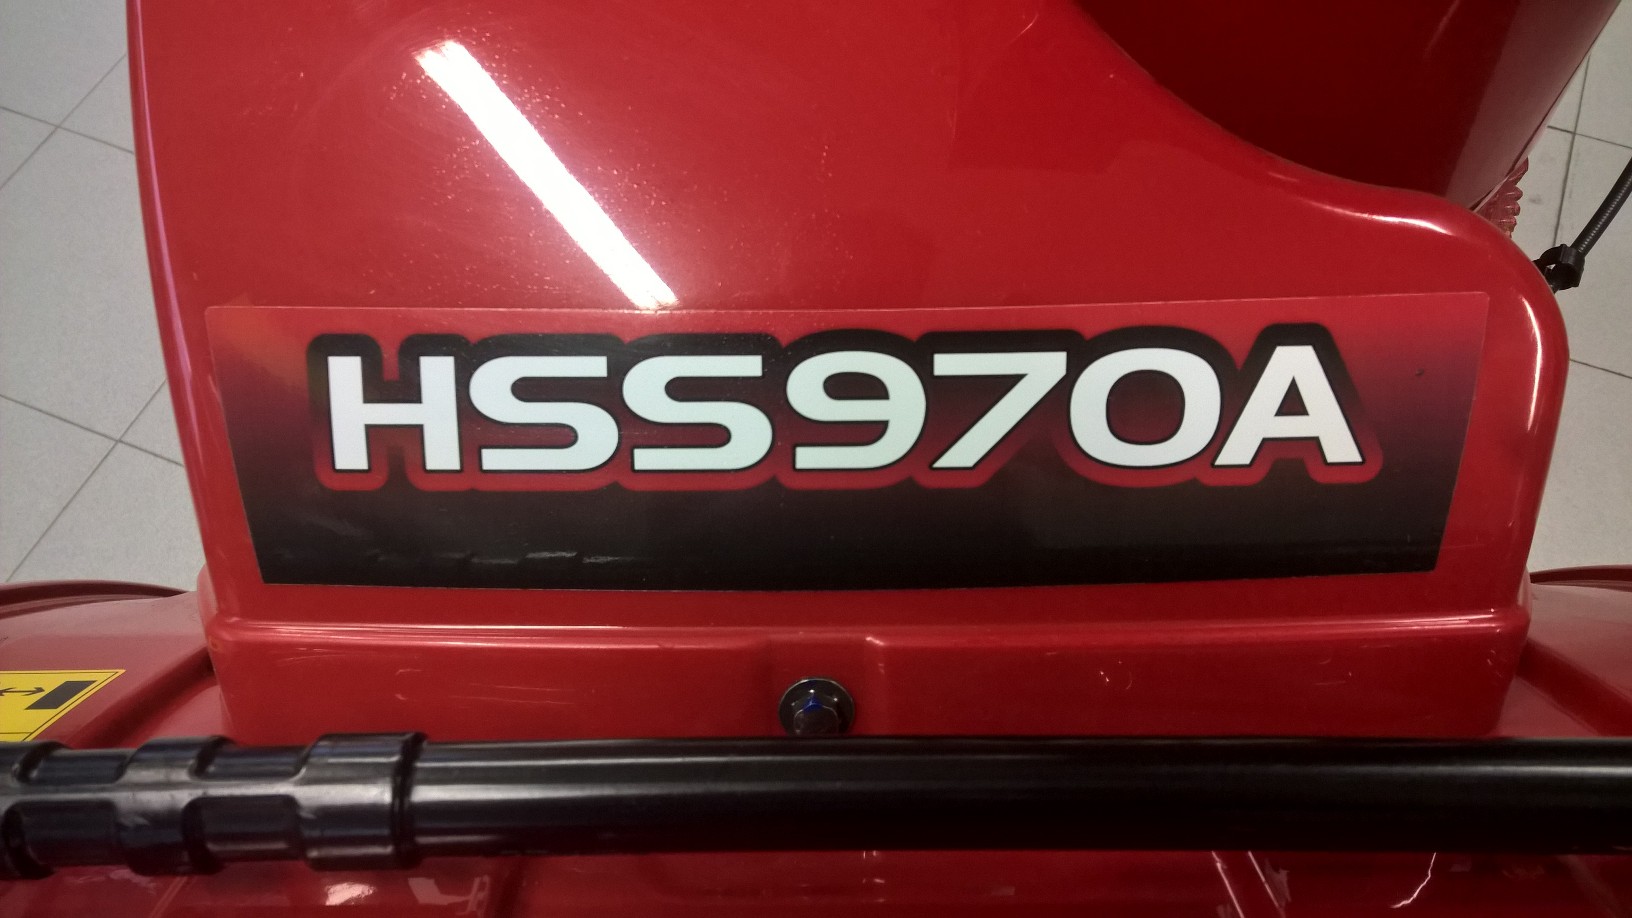 Honda HSS 970A-01